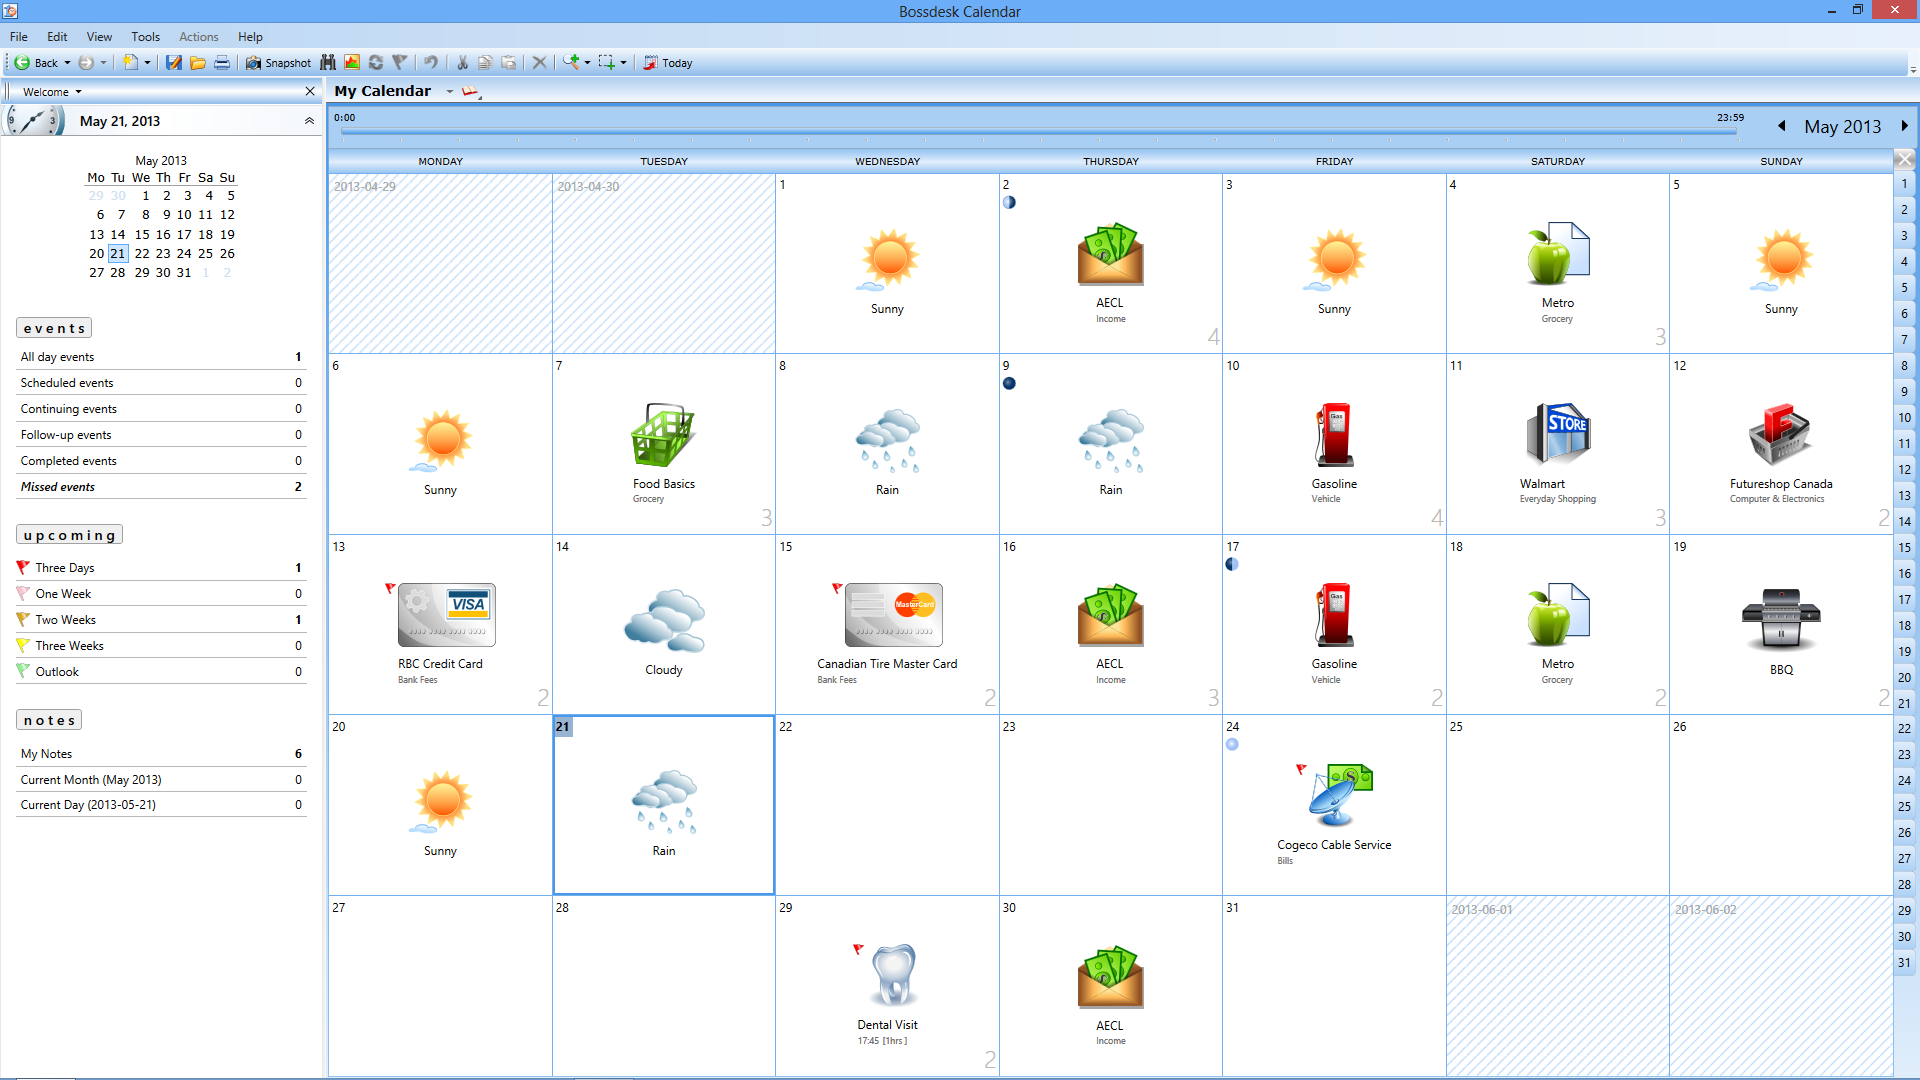 Bossdesk Calendar 1.0.1.5 software screenshot